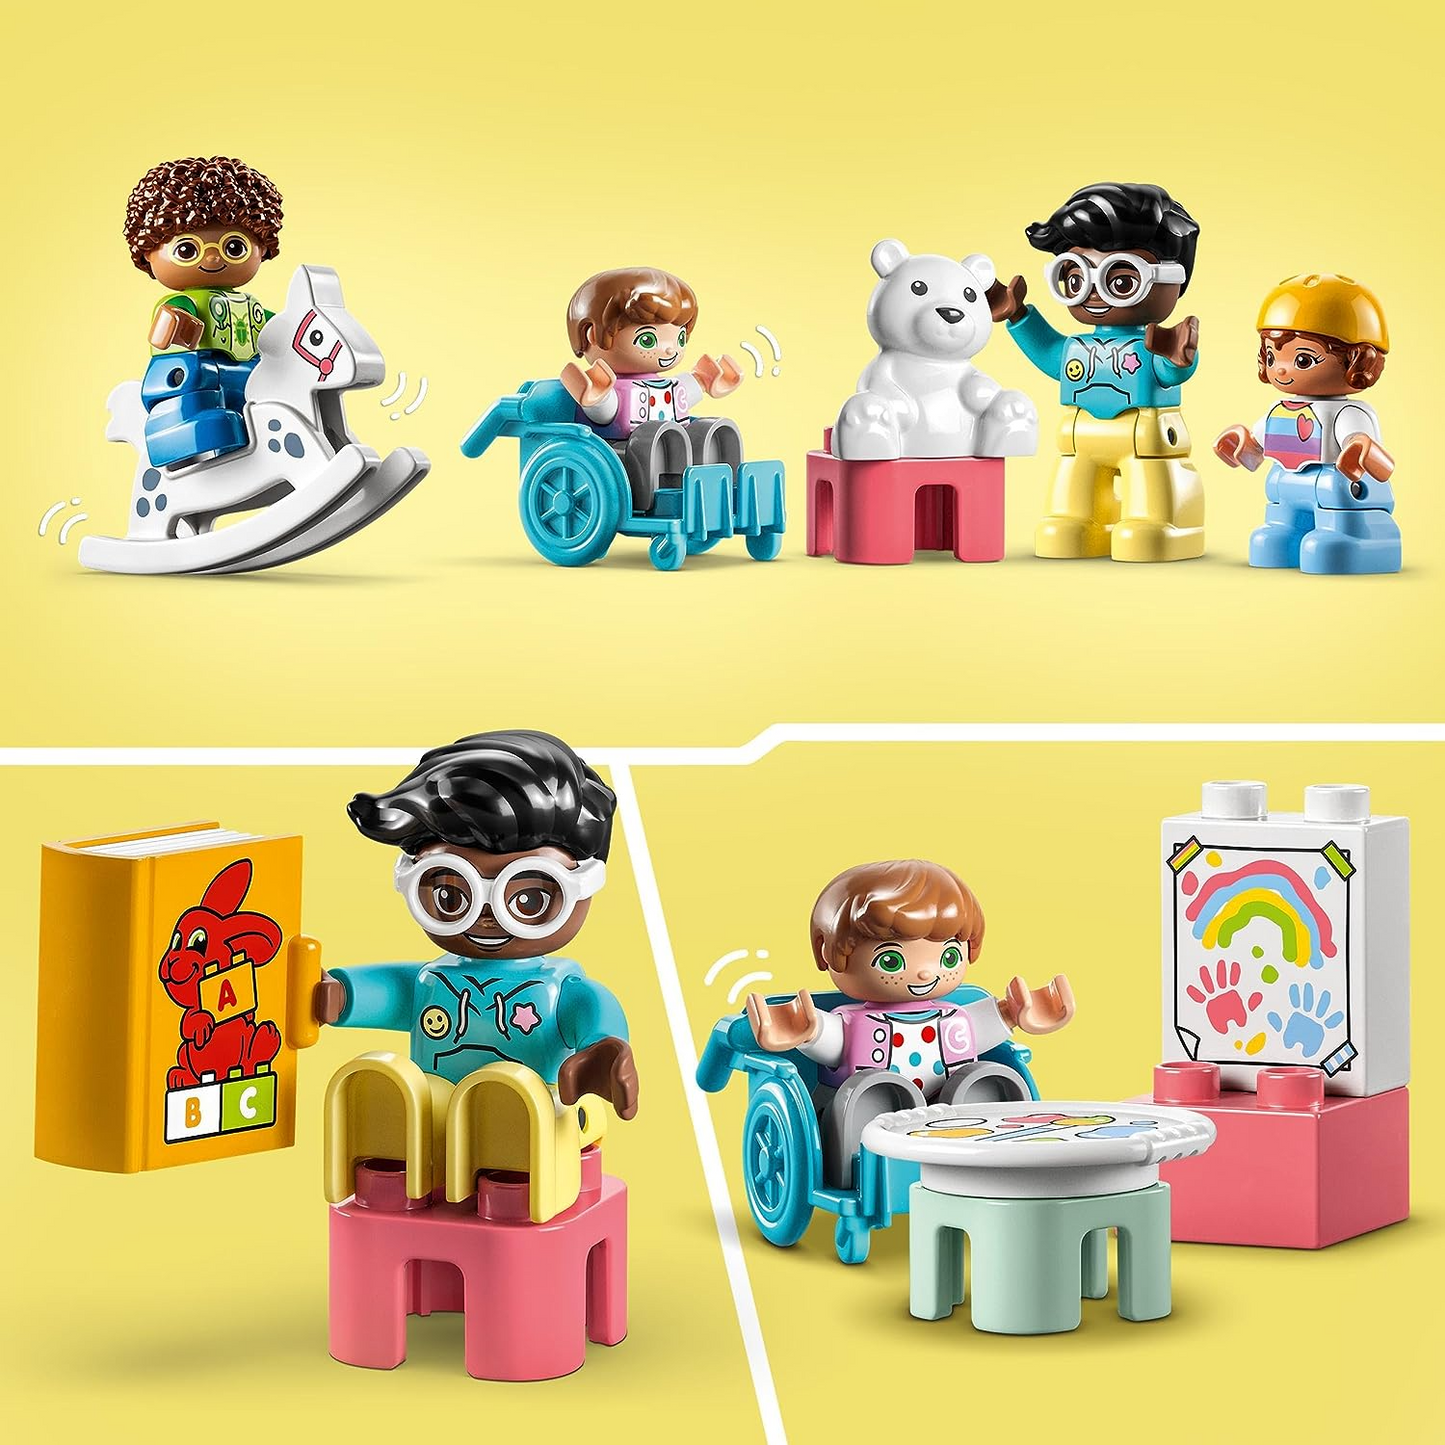 LEGO 10992 DUPLO Town Life no berçário, brinquedo educativo para crianças de 2 anos ou mais, conjunto de aprendizagem com tijolos de construção e 4 figuras incl. Professor de pré-escola